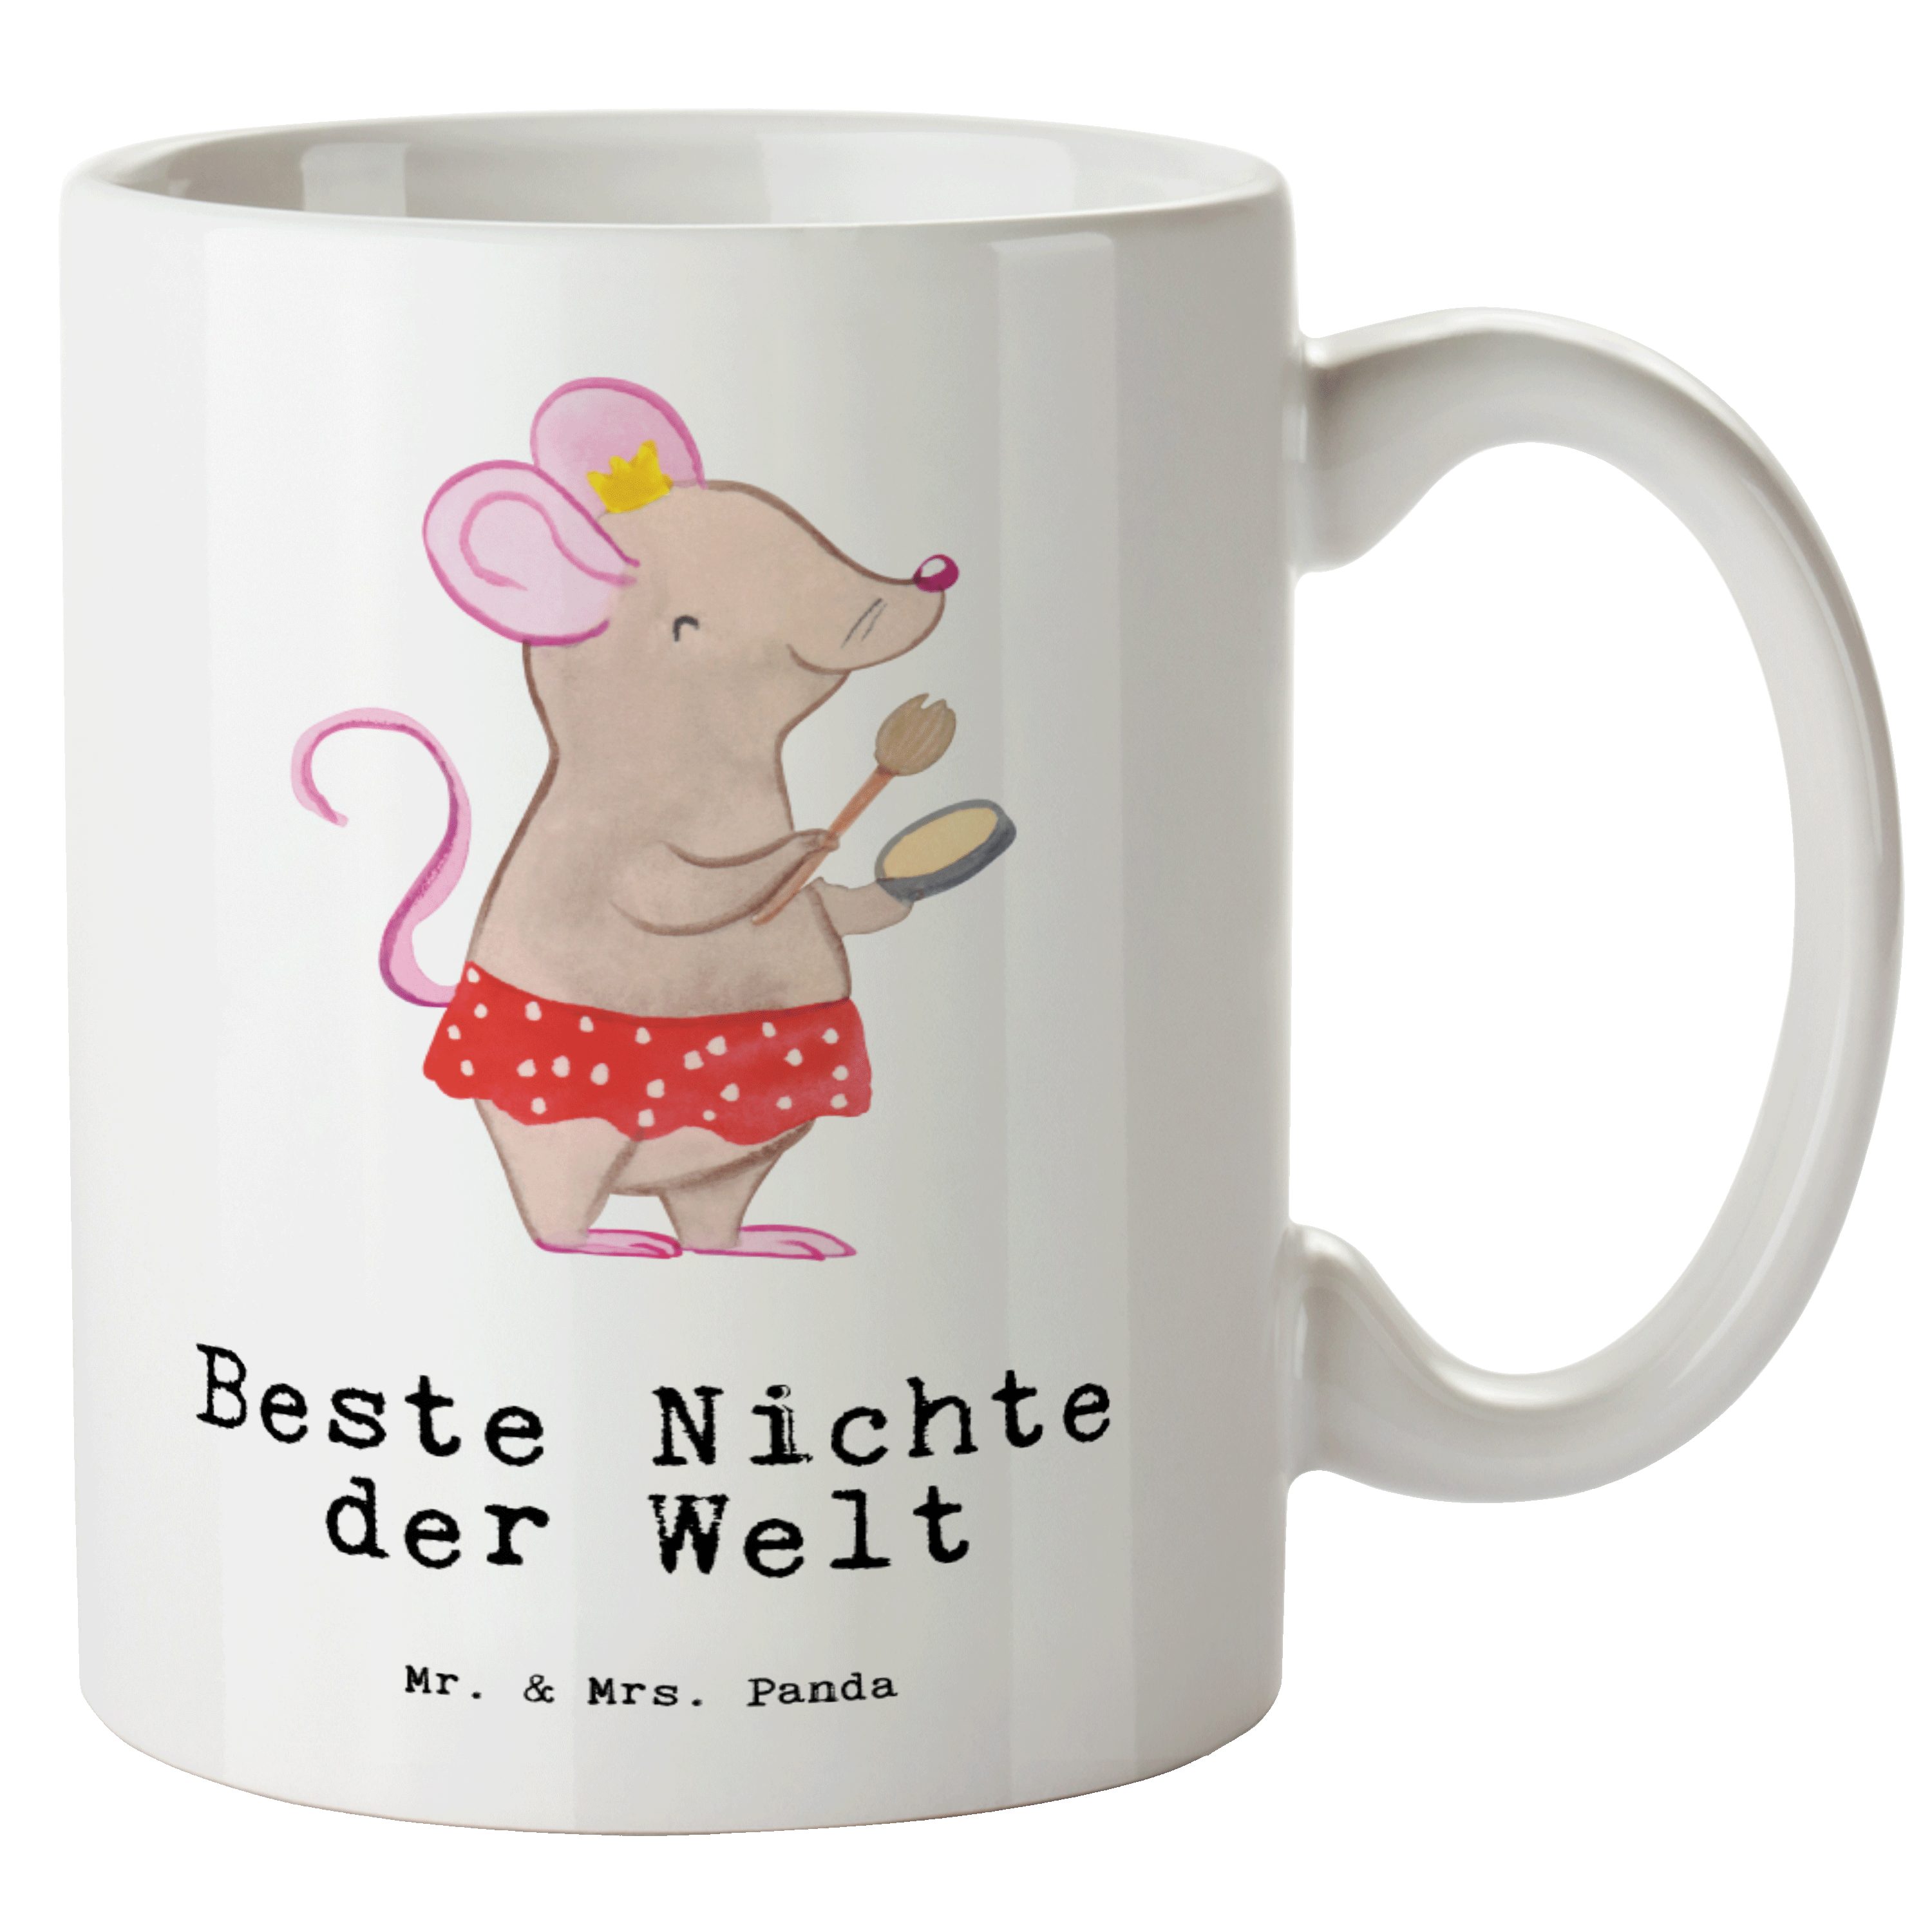 Mr. & Mrs. Panda Tasse Maus Beste Nichte der Welt - Weiß - Geschenk, XL Teetasse, Tochter de, XL Tasse Keramik